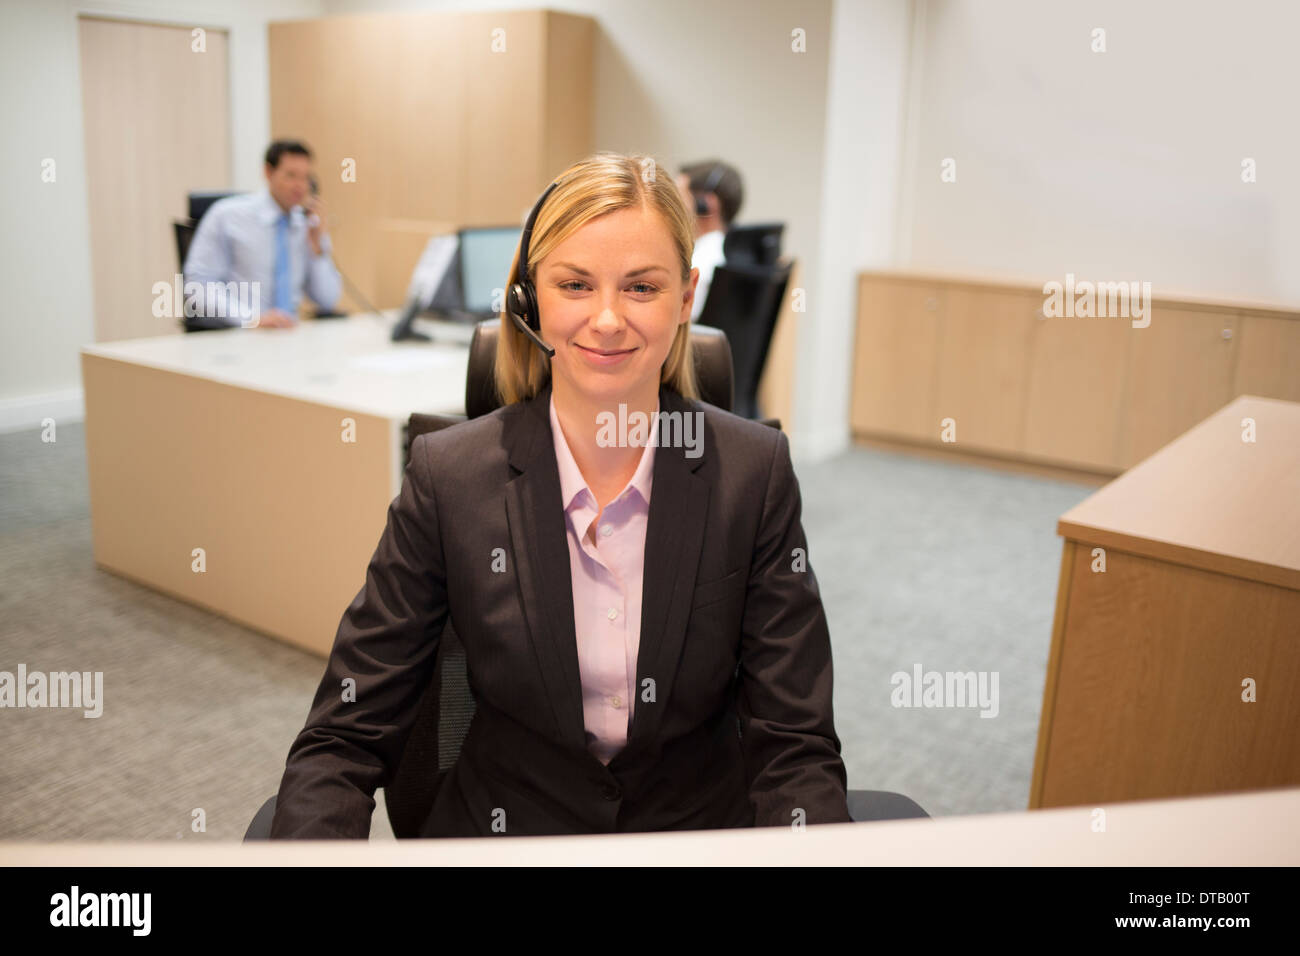 Portrait of smiling woman réceptionniste dans le hall Banque D'Images